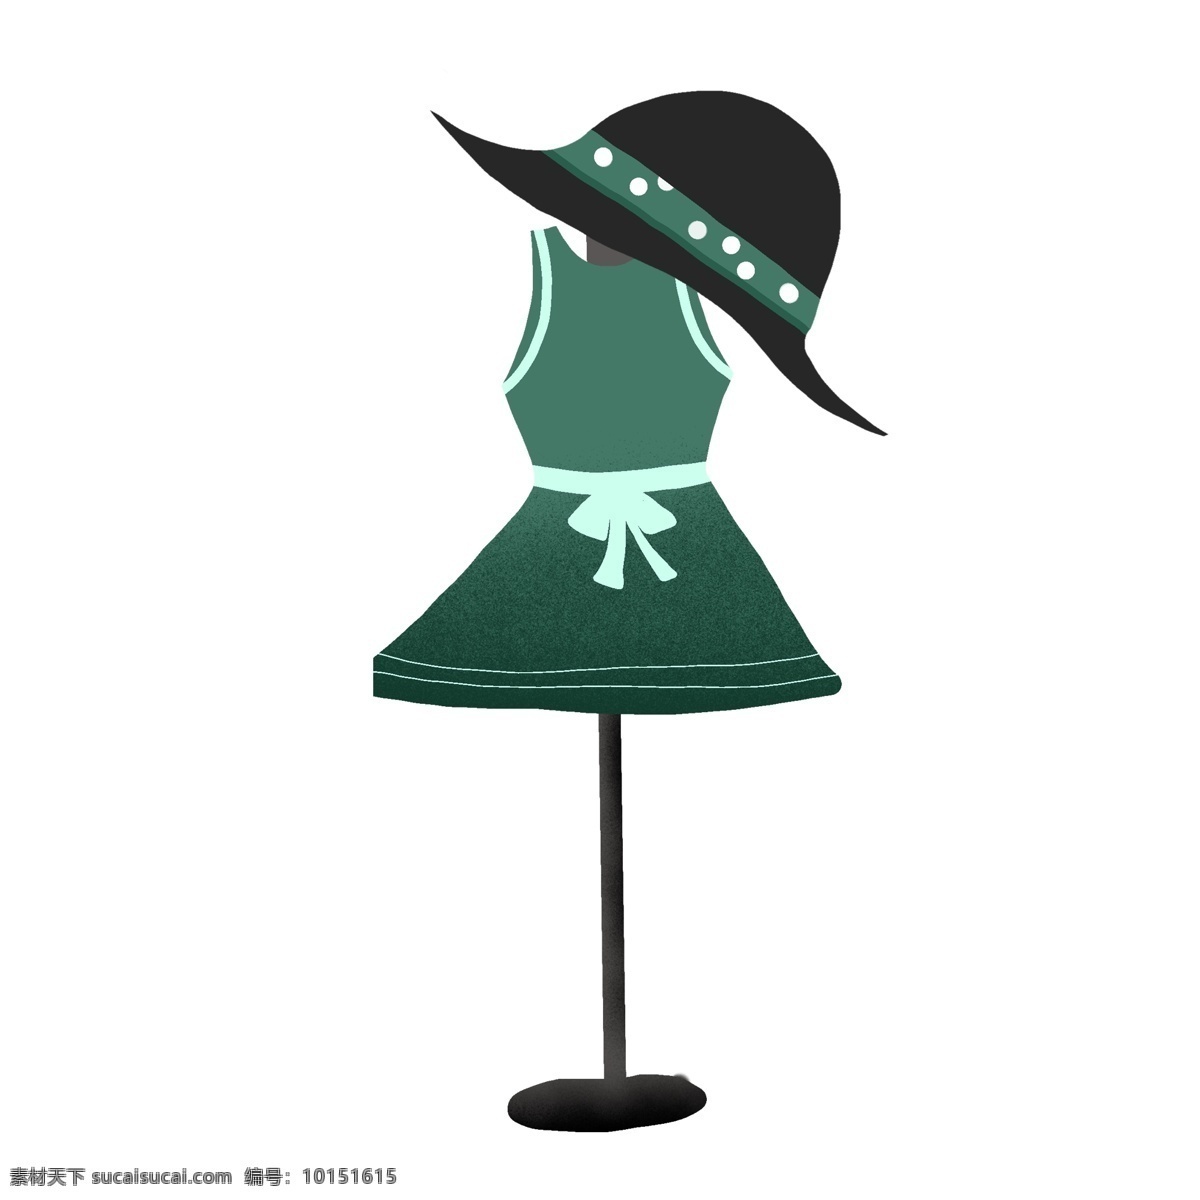 绿色 小 清新 衣帽架 商用 卡通 时尚 服装 衣架 手绘 衣帽